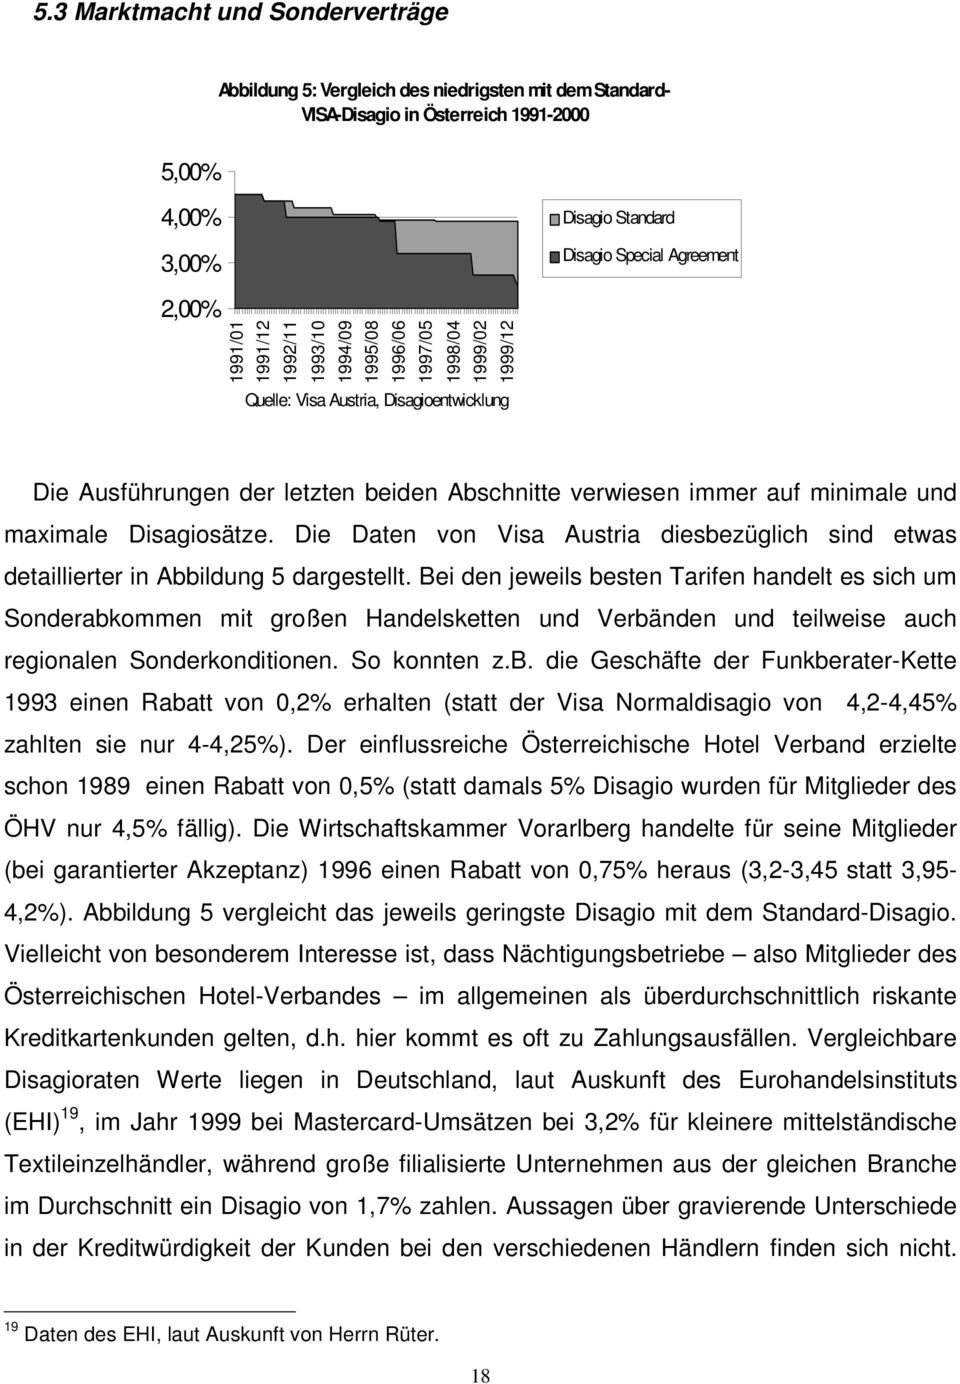 minimale und maximale Disagiosätze. Die Daten von Visa Austria diesbezüglich sind etwas detaillierter in Abbildung 5 dargestellt.